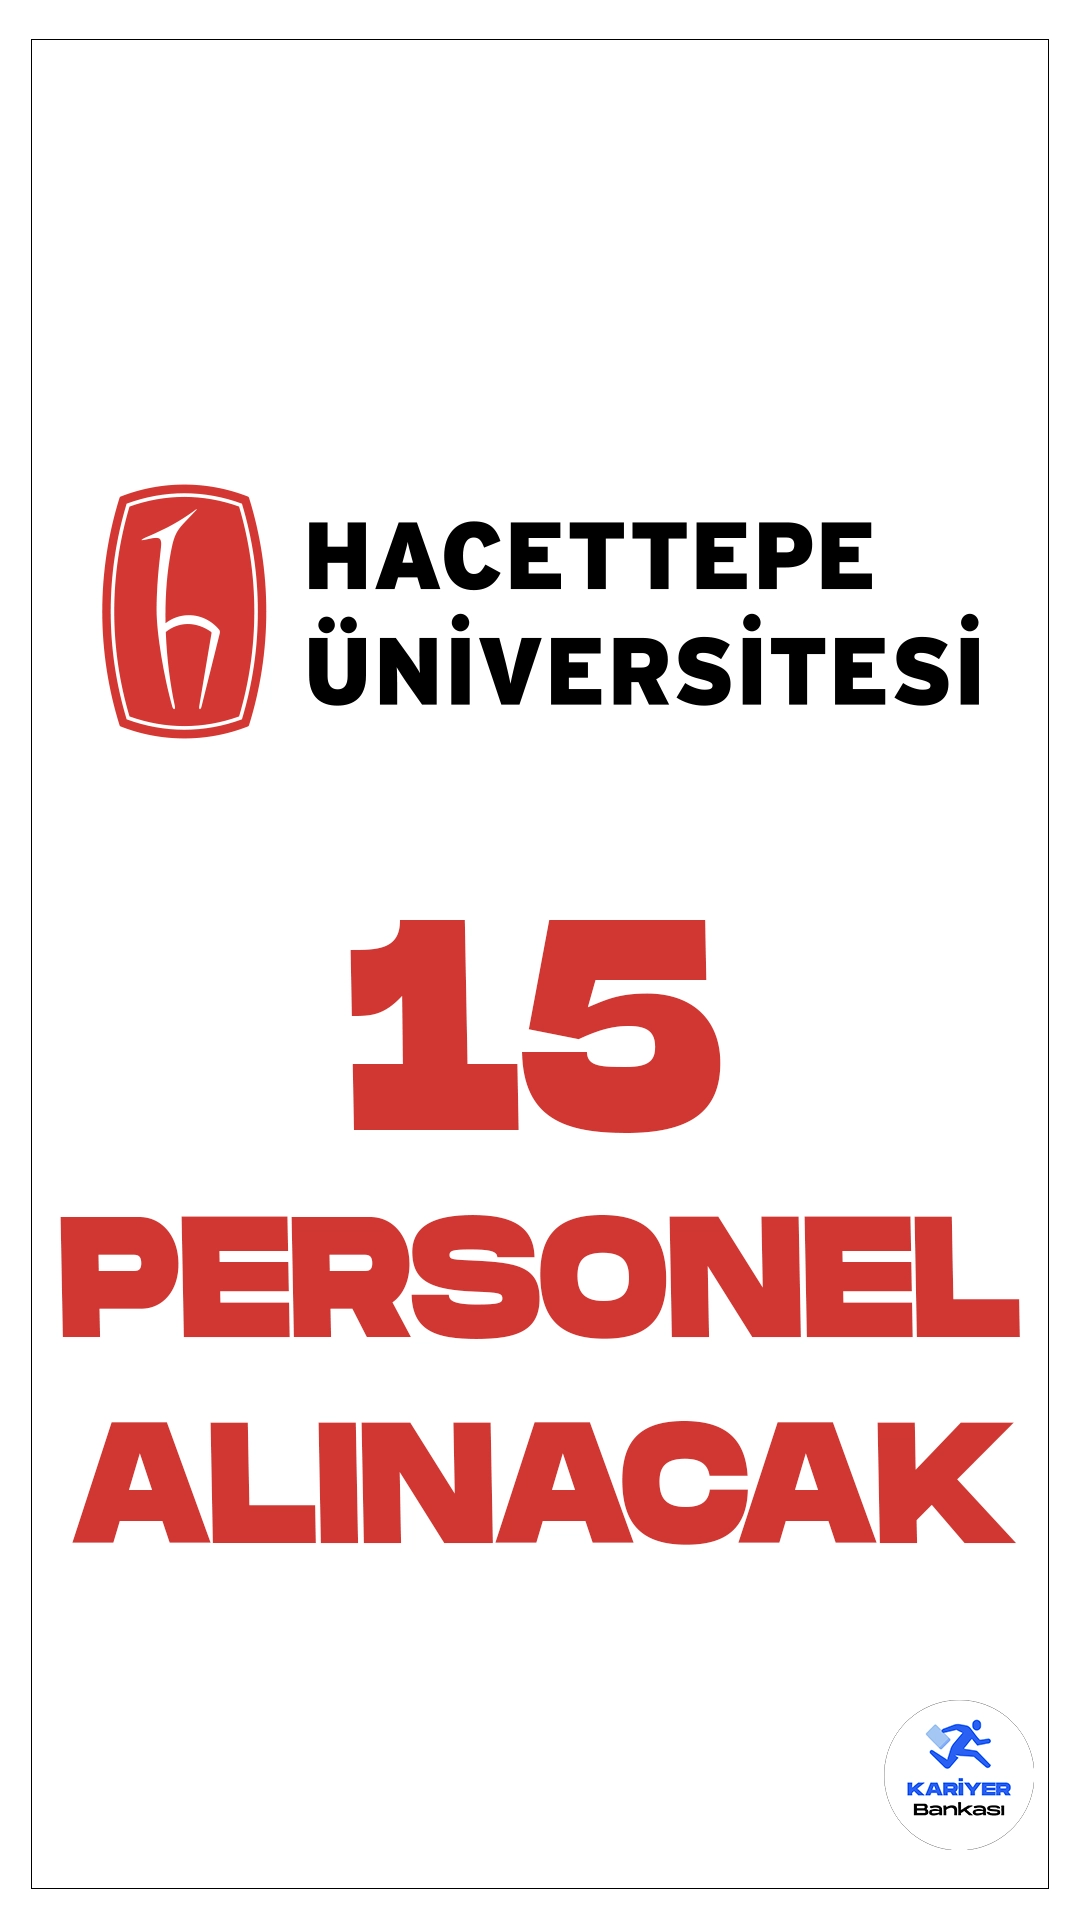 Hacettepe Üniversitesi 15 Personel Alımı Yapacak. Hacettepe Üniversitesi çocuk gelişimcisi ve sağlık teknikeri alımı yapacak. Başvurular 29 Aralık itibarıyla alınacak. başvuru yapacak adayların genel şartların yanı sıra, özel şartları da dikkatle incelemesi gerekmektedir.